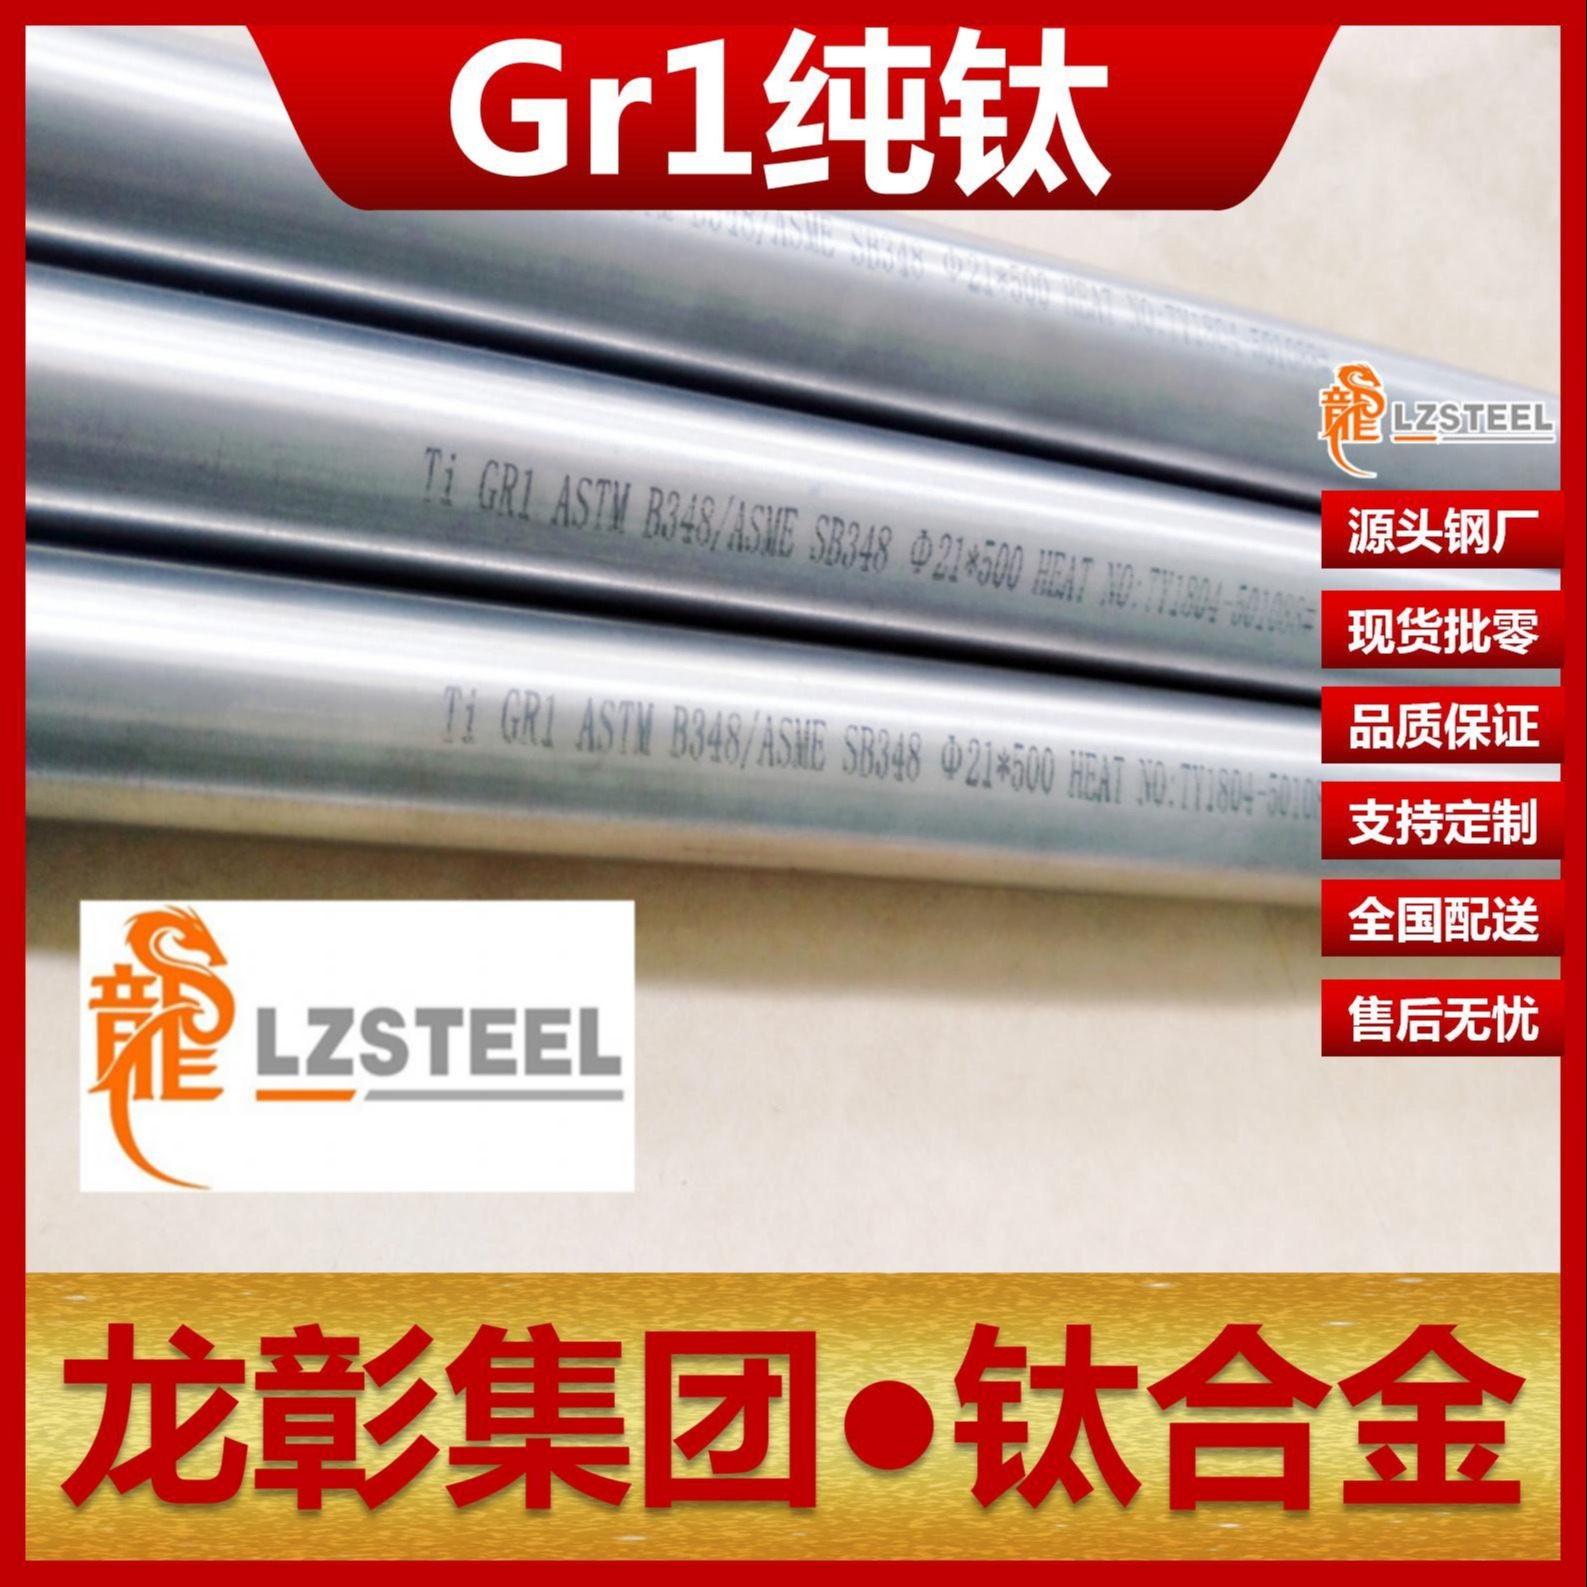 龙彰集团GR1钛合金现货批零 GR1钛合金高品质钛板棒管可定制生产